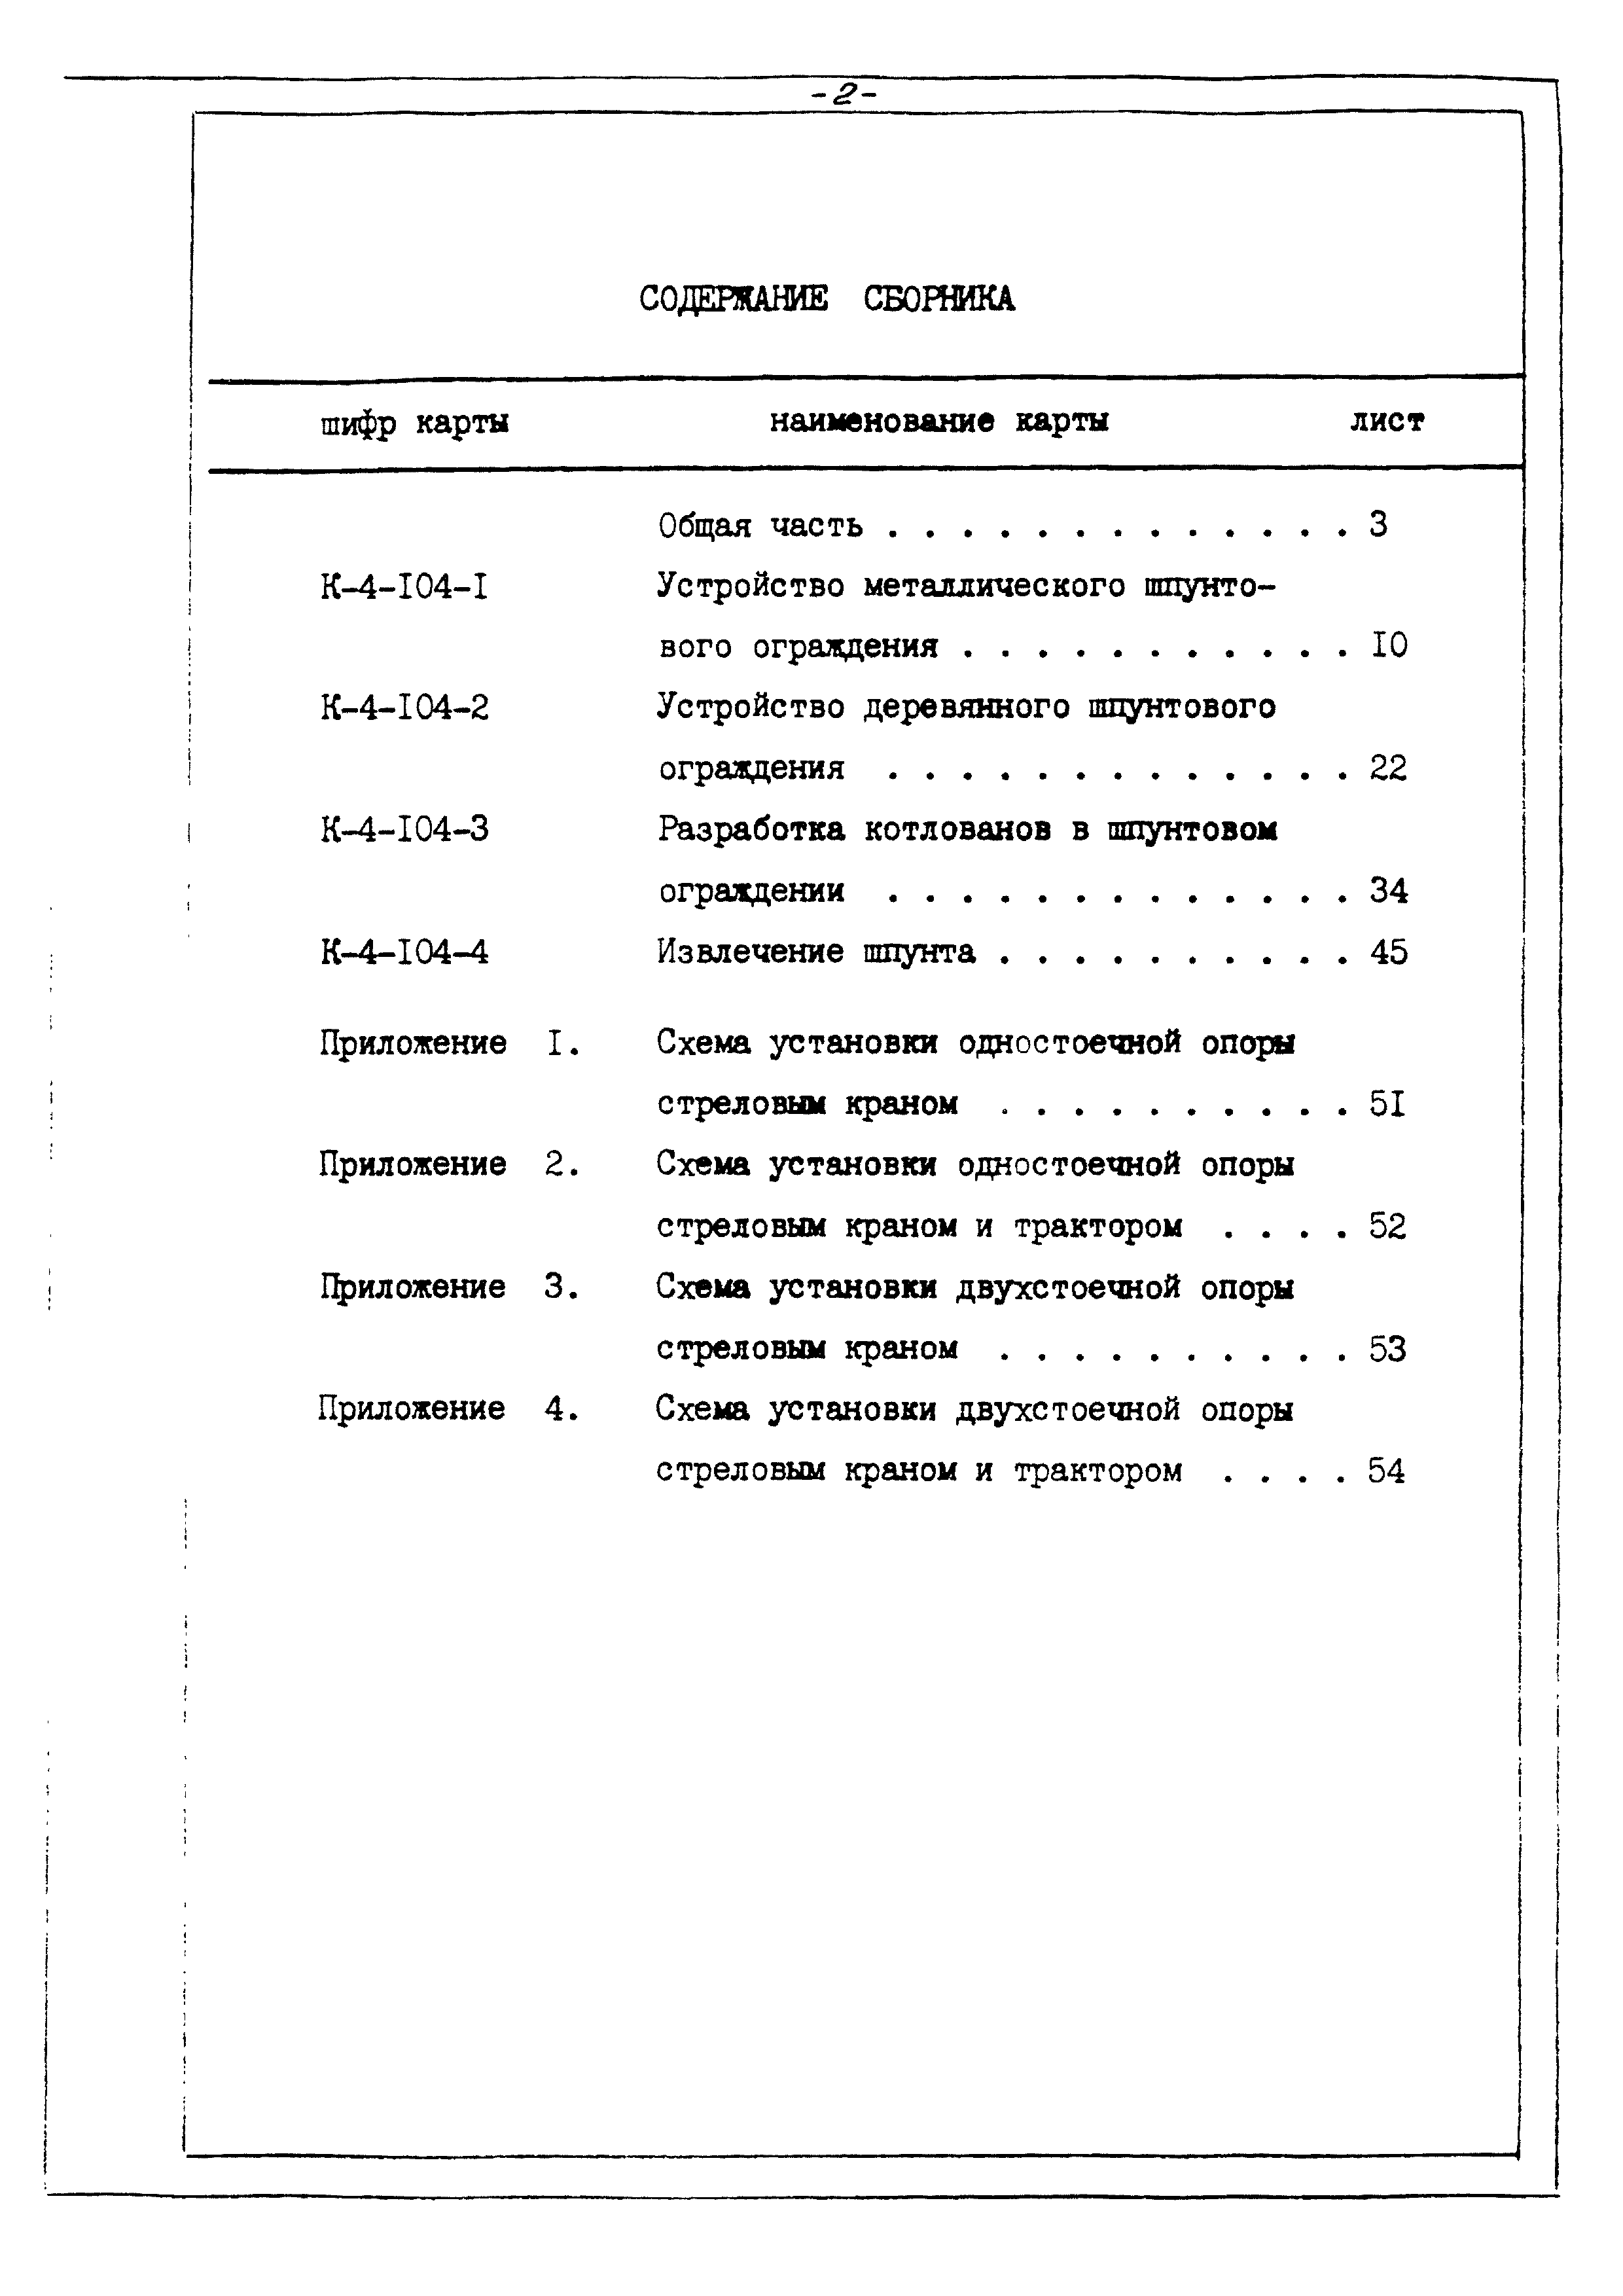 ТТК К-4-104-3